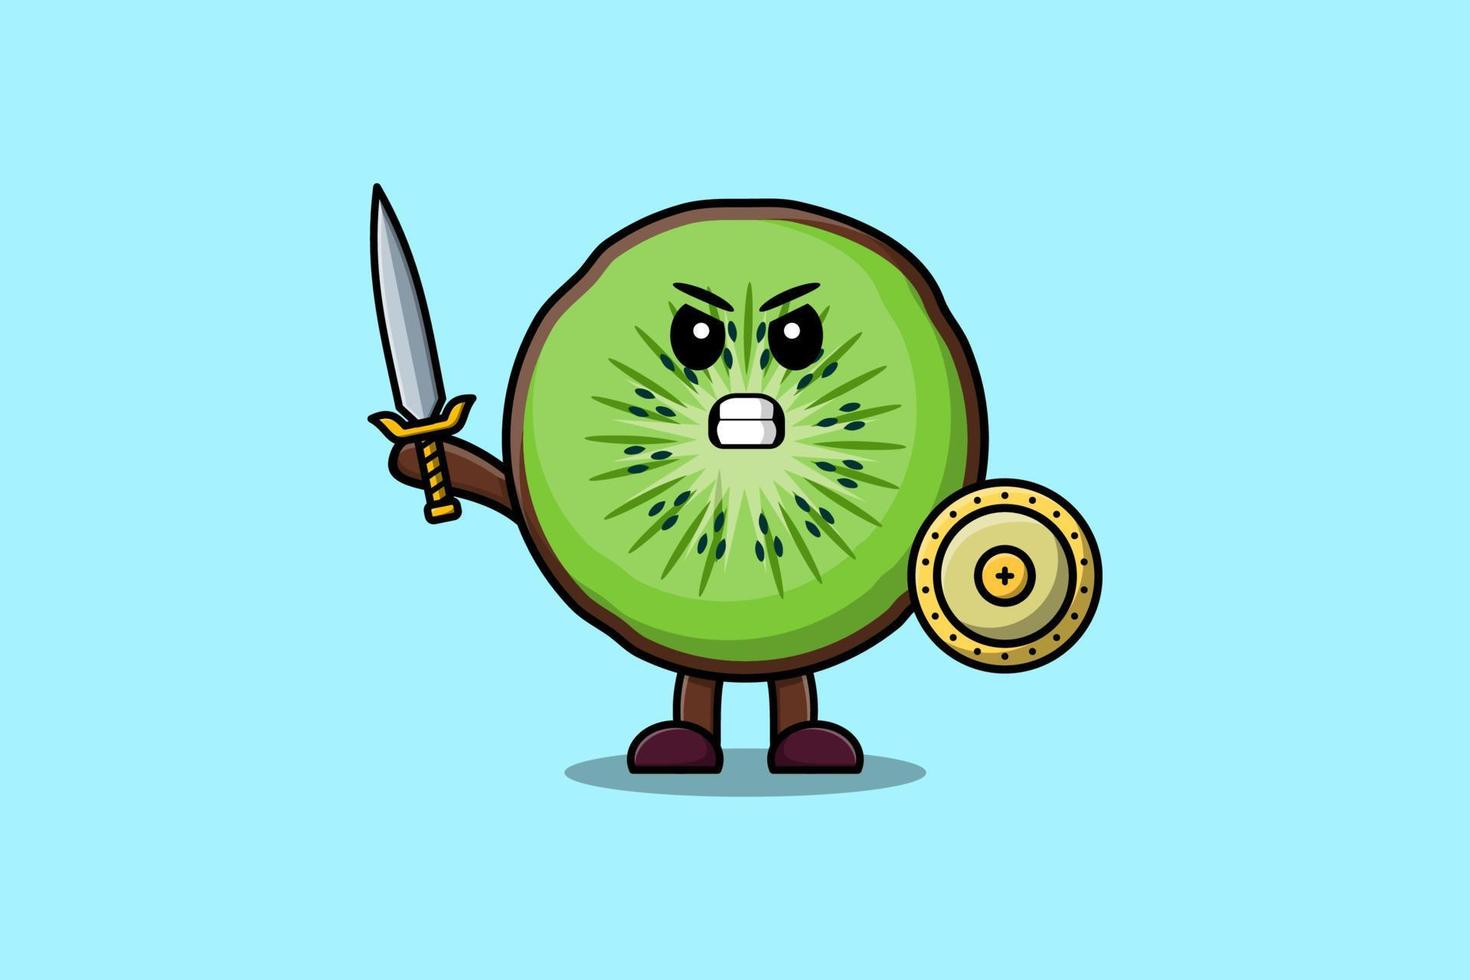 personnage de dessin animé mignon kiwi tenant une épée vecteur